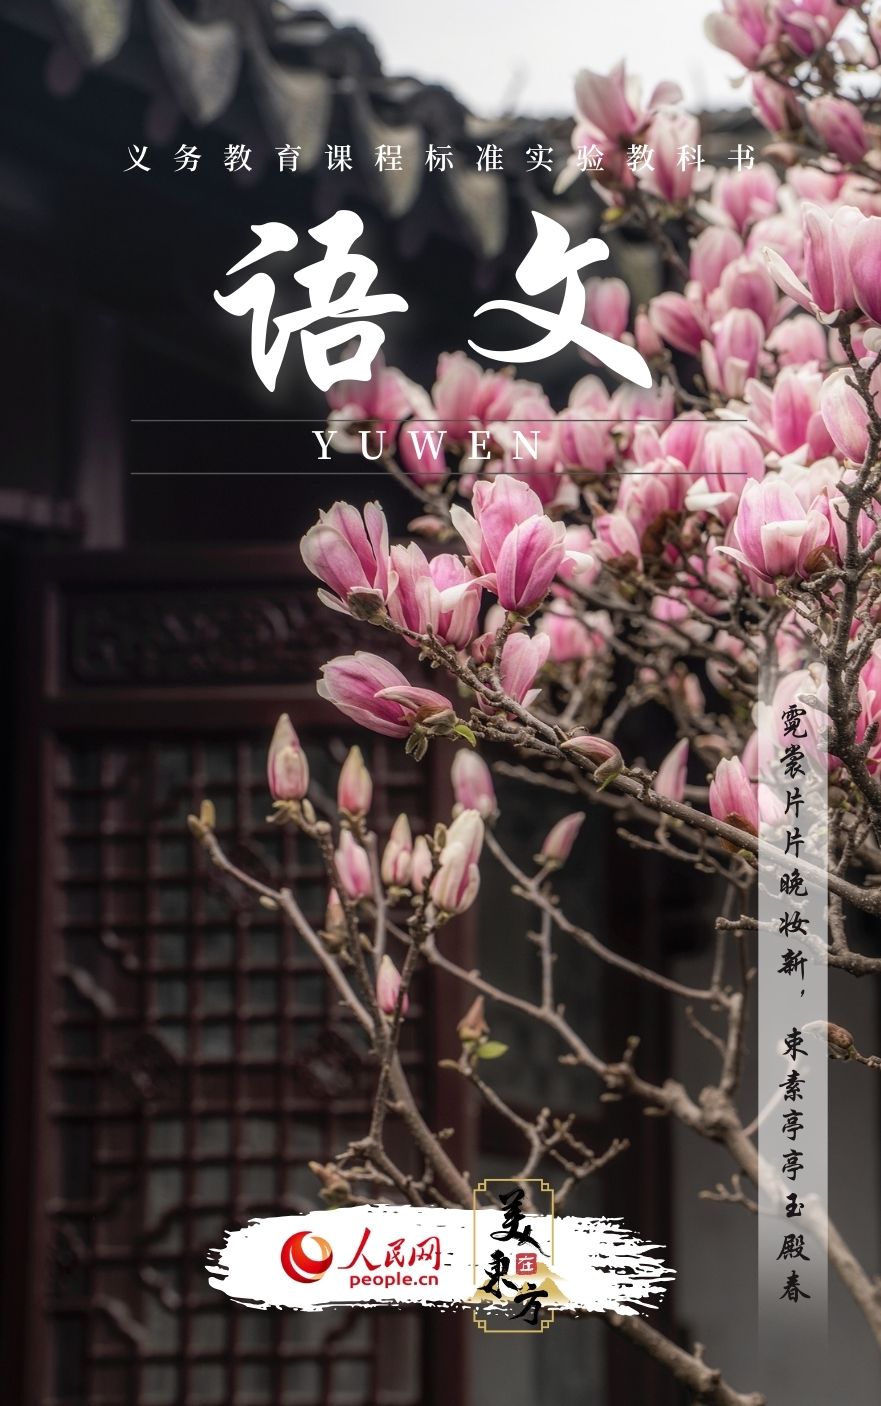 江苏苏州网师园玉兰一树繁花迎春来。并推出拍摄套餐。全国各地围绕“赏花+”上新多种新玩法
，<p style=